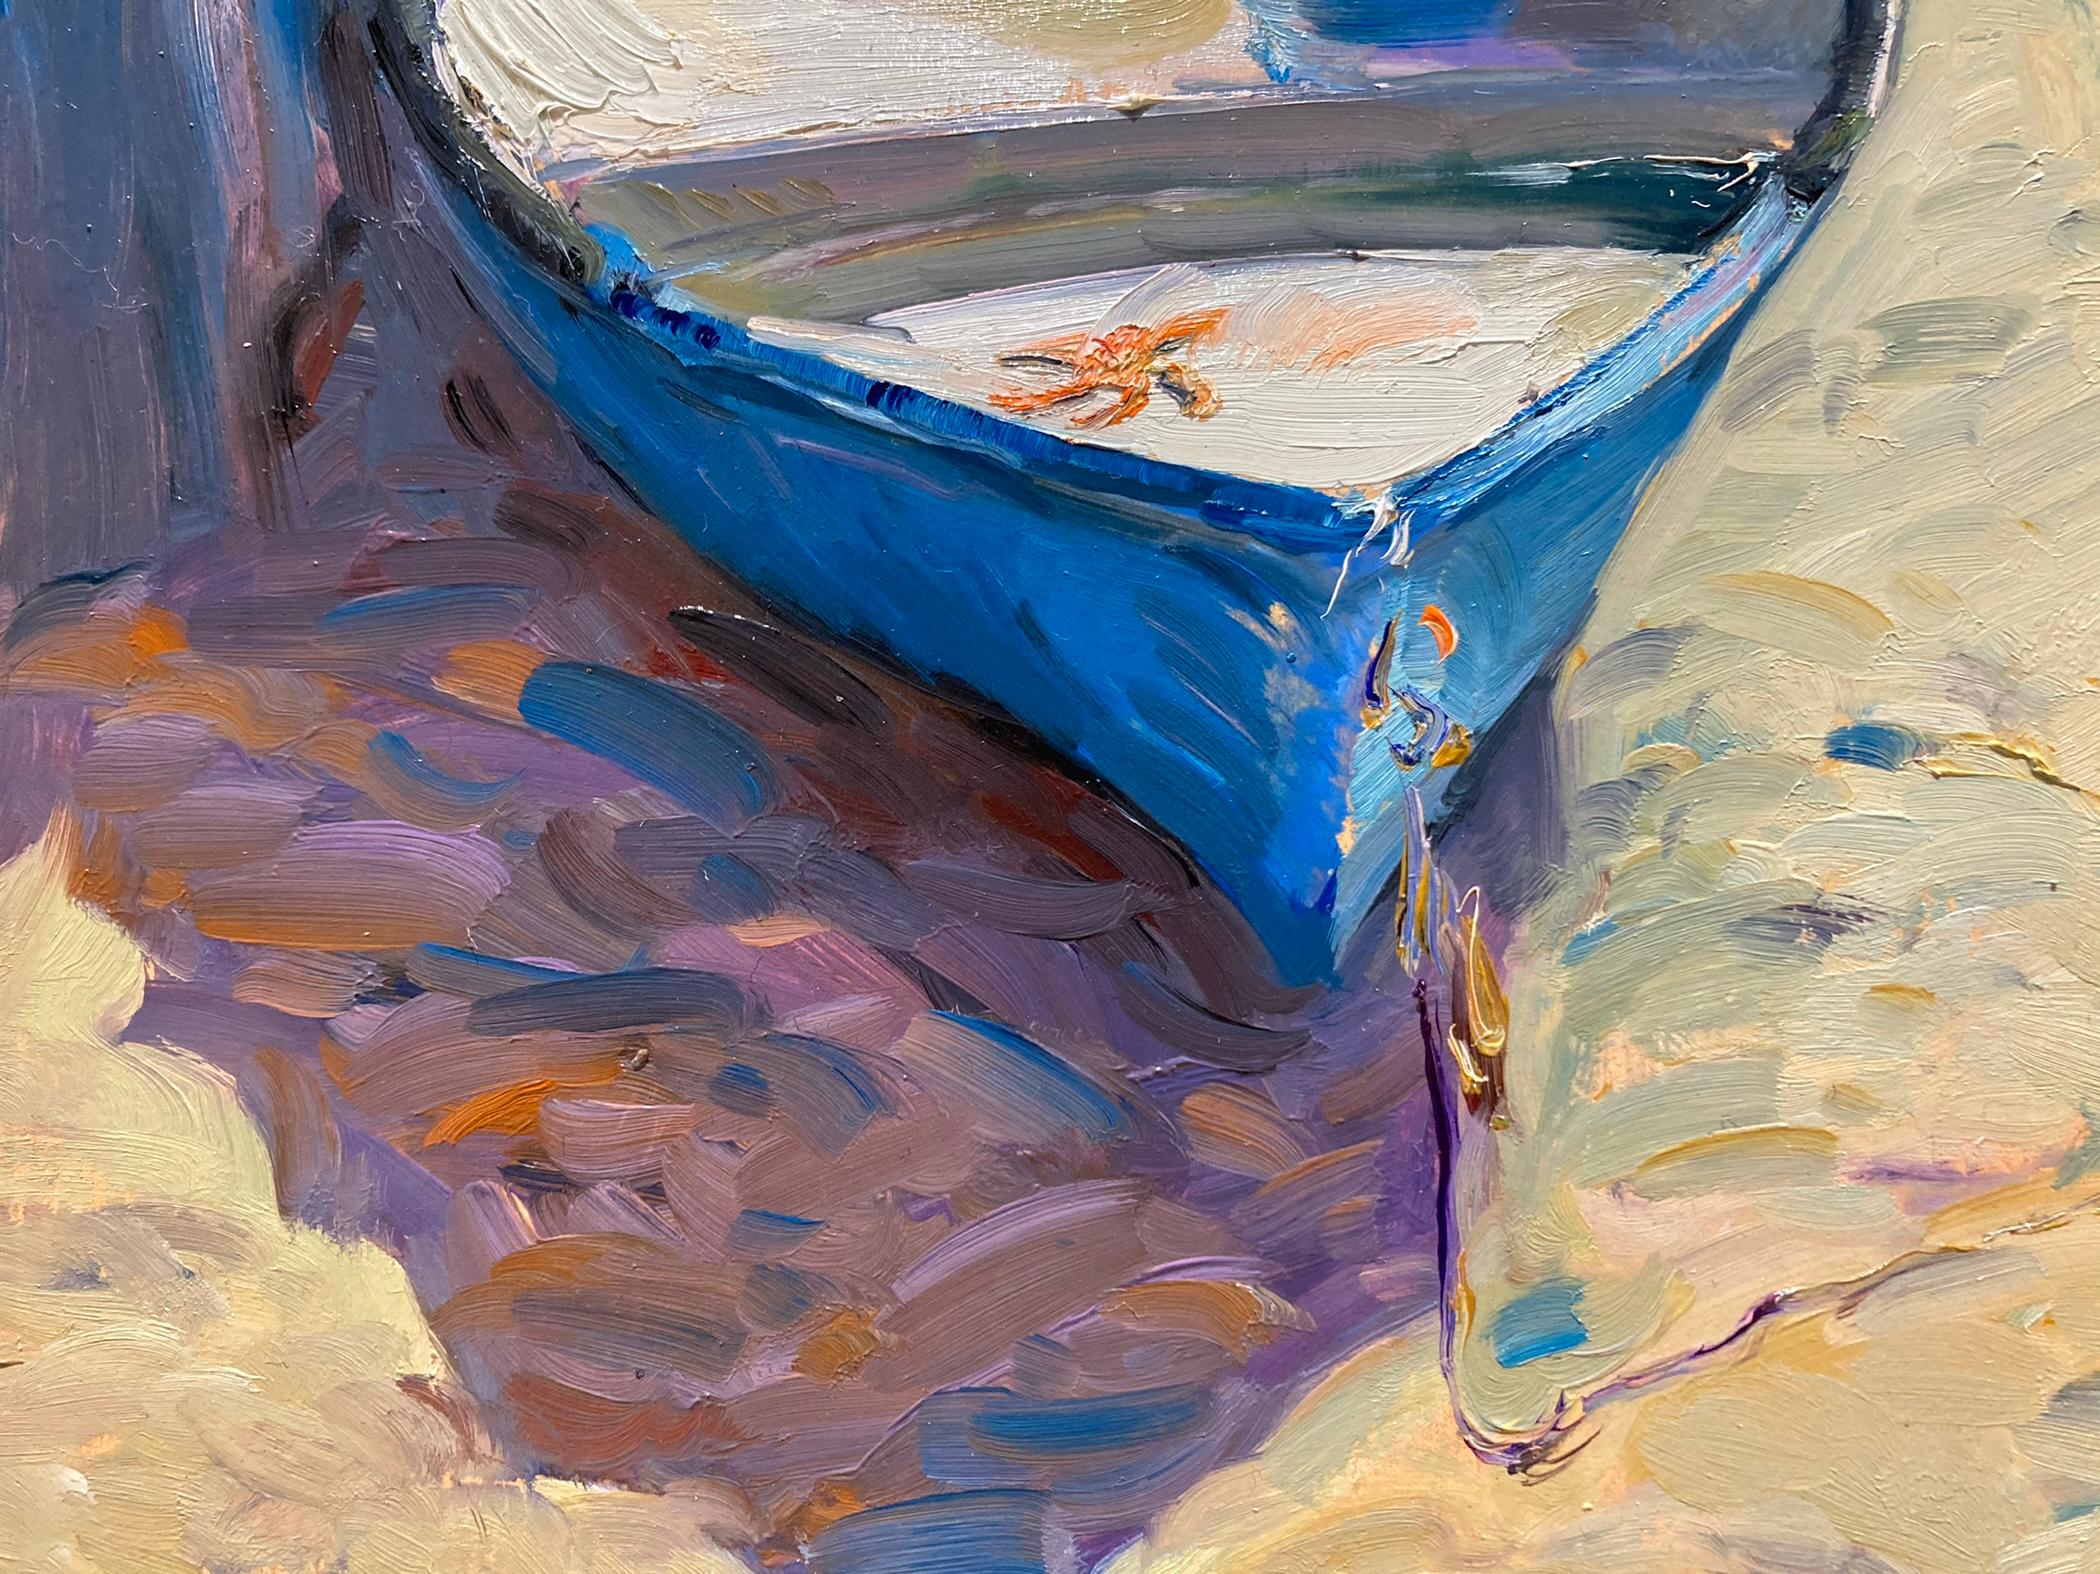 Fischerboote, Salema (Grau), Still-Life Painting, von Tina Orsolic Dalessio